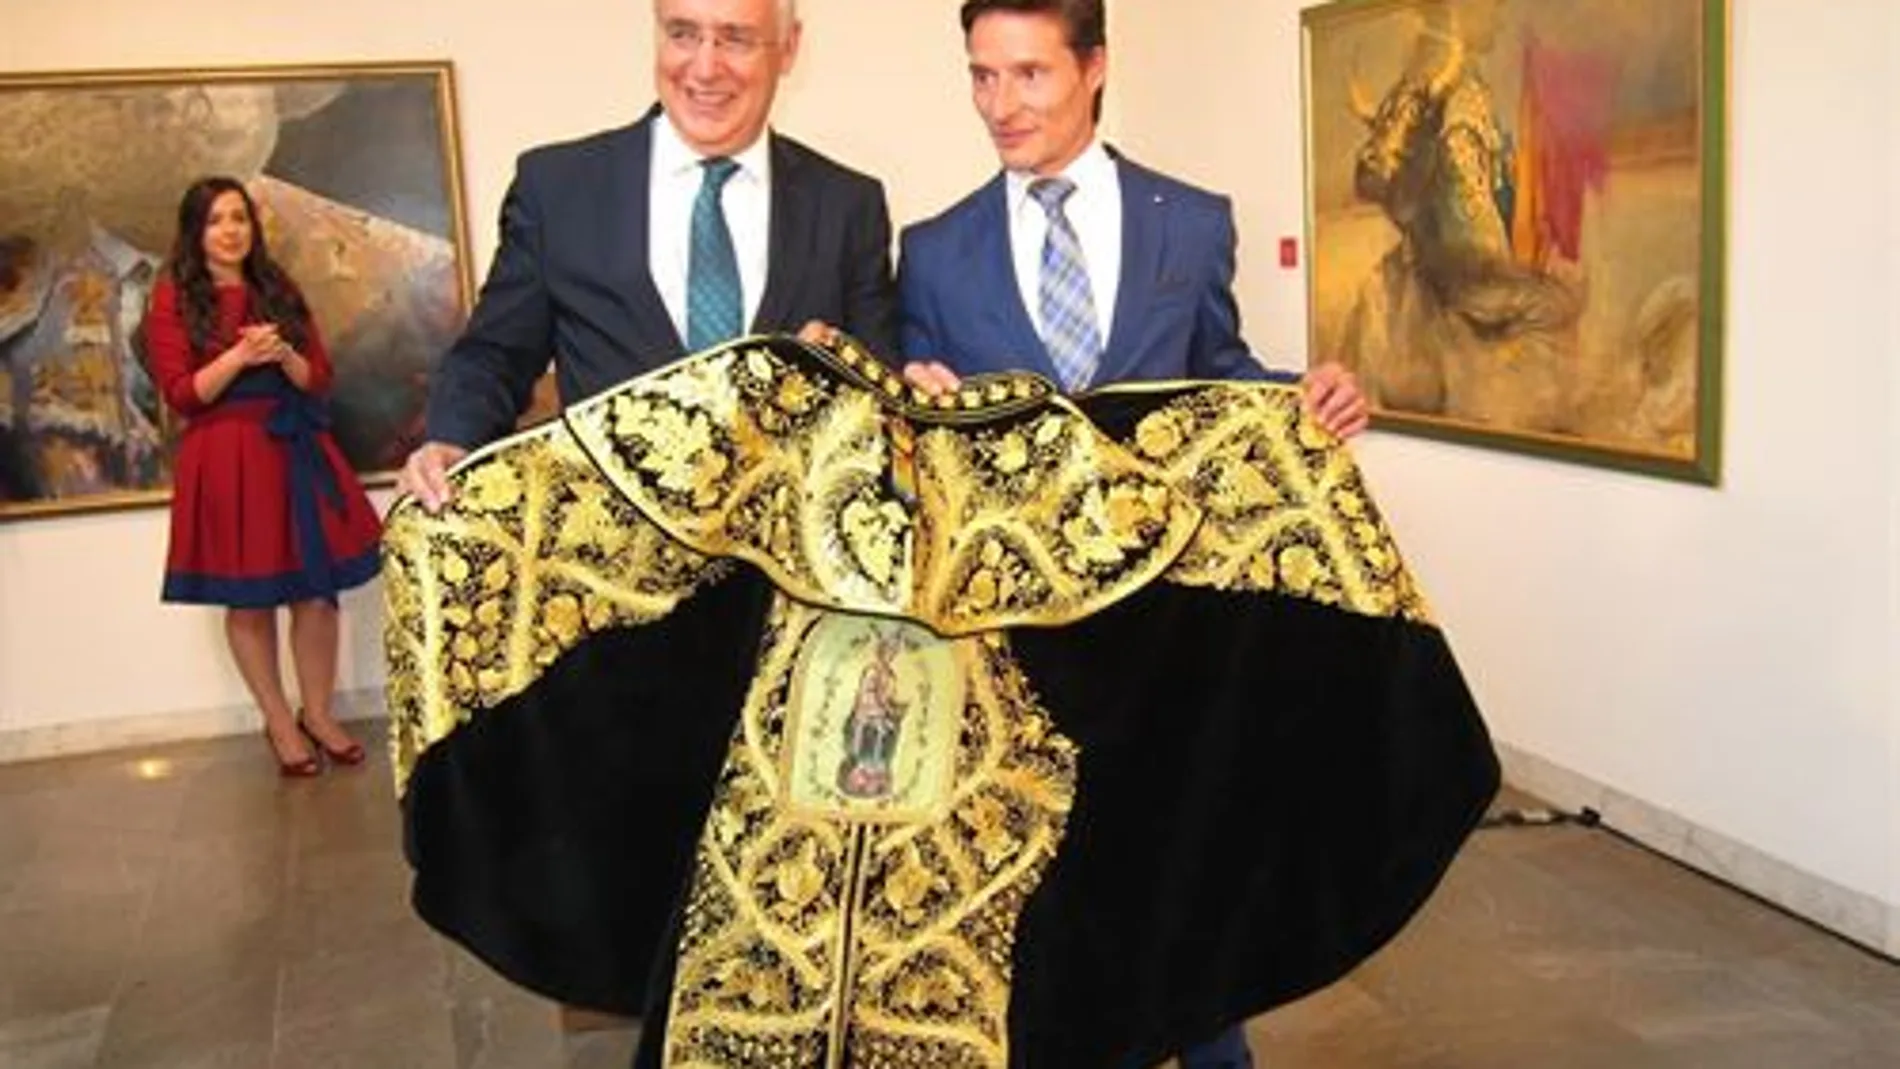 El diestro recibe emocionado el «Capote de Paseo» de manos del presidente del Gobierno riojano, José Ignacio Ceniceros